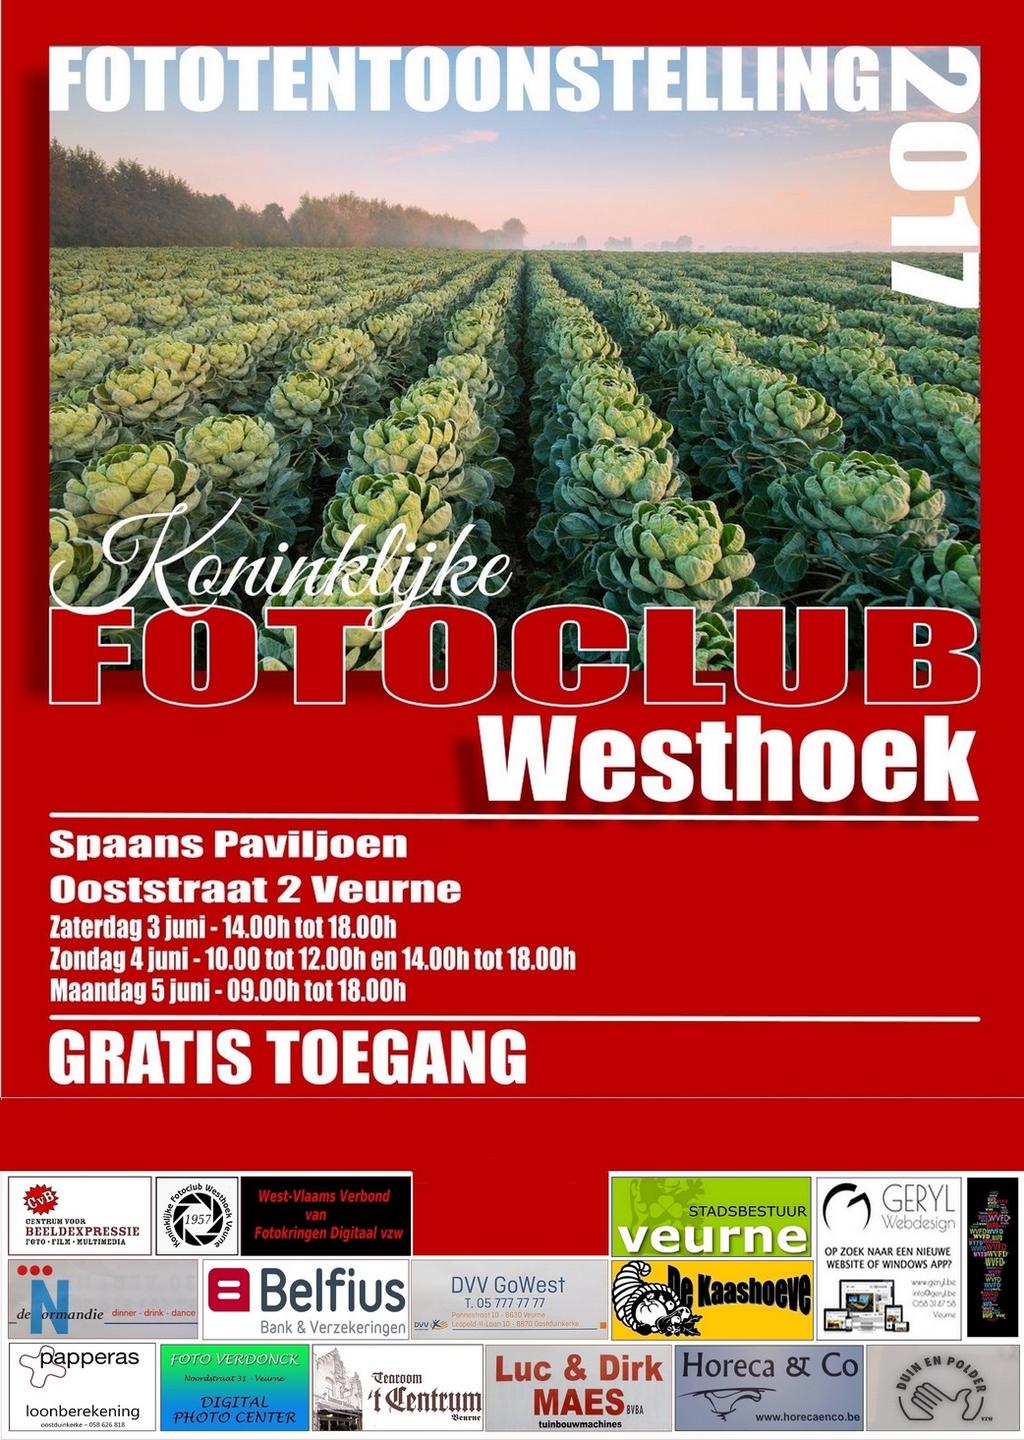 Programma boekje: Fototentoonstelling 2019 Koninklijke fotoclub Westhoek. Hierbij de mooie affiche van 2017 gemaakt door Freddy.